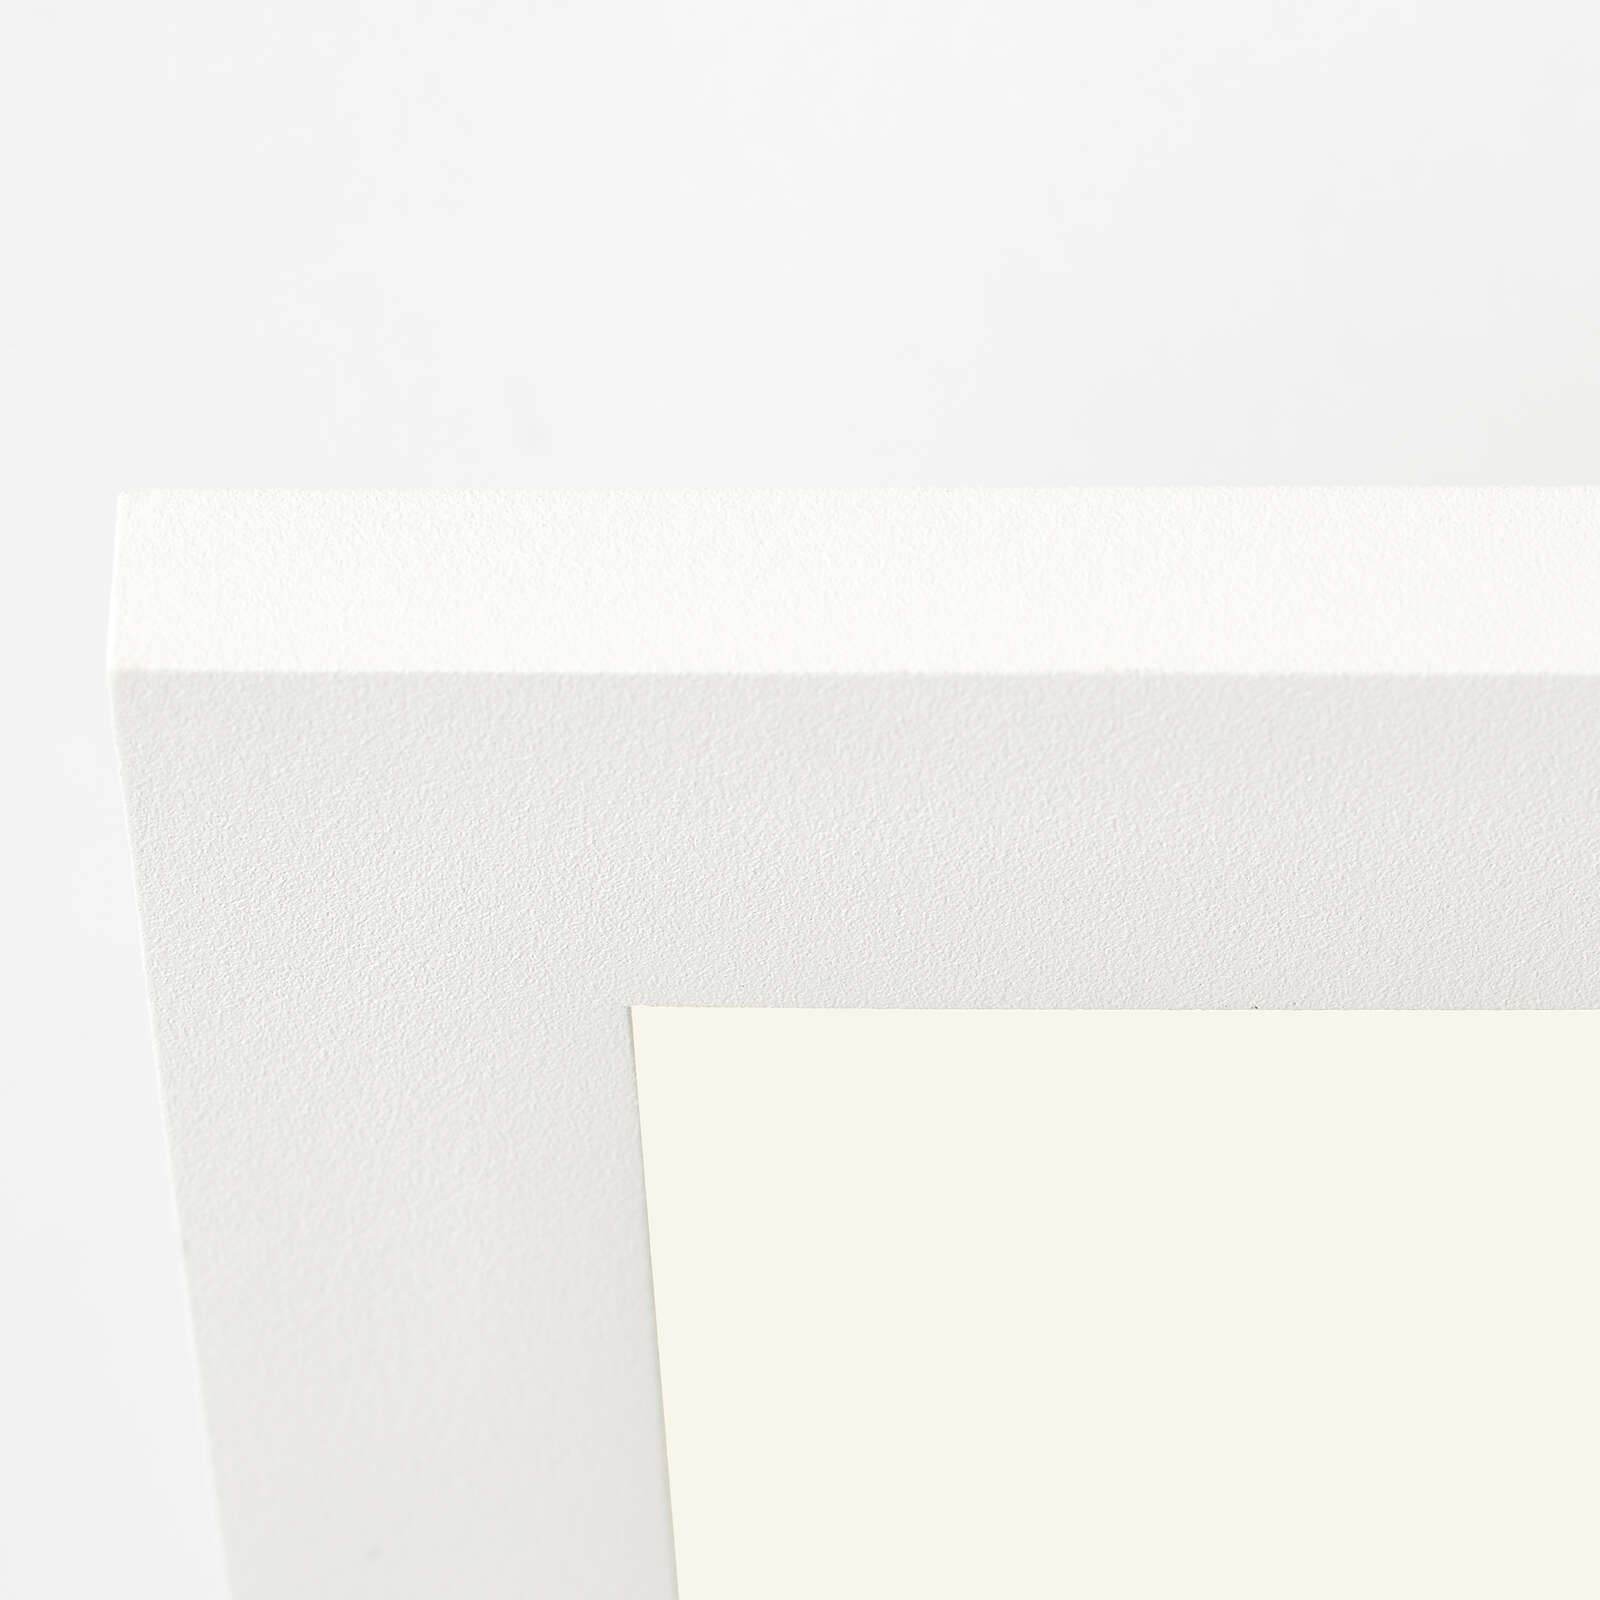             Panel metálico de superficie - Constantin 14 - Blanco
        